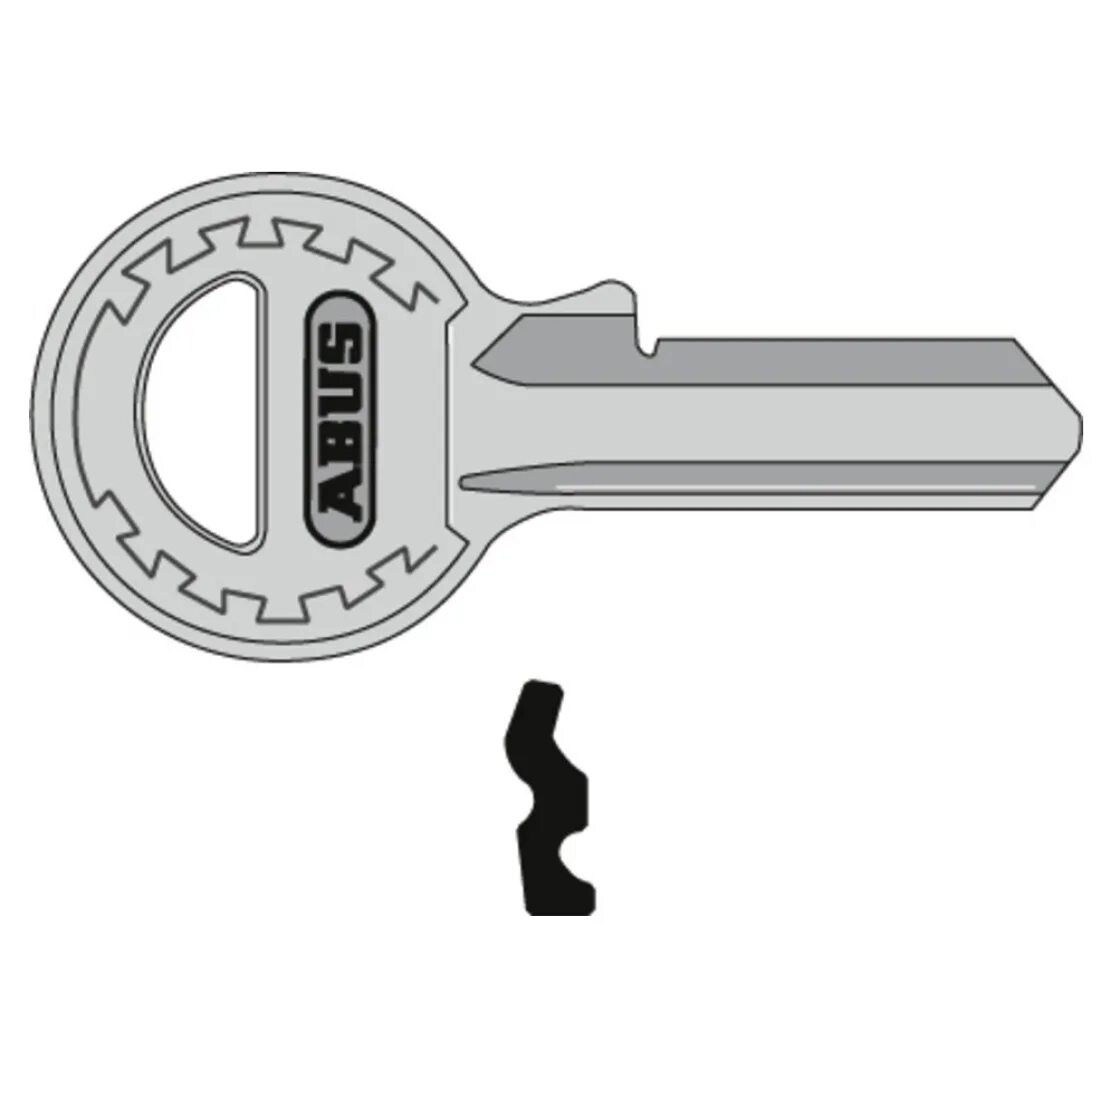 Профильный ключ. Профиль ключа. Тип ключа профильный. Приспособление Кейчеккер для проверки профиля ключа. Profile key